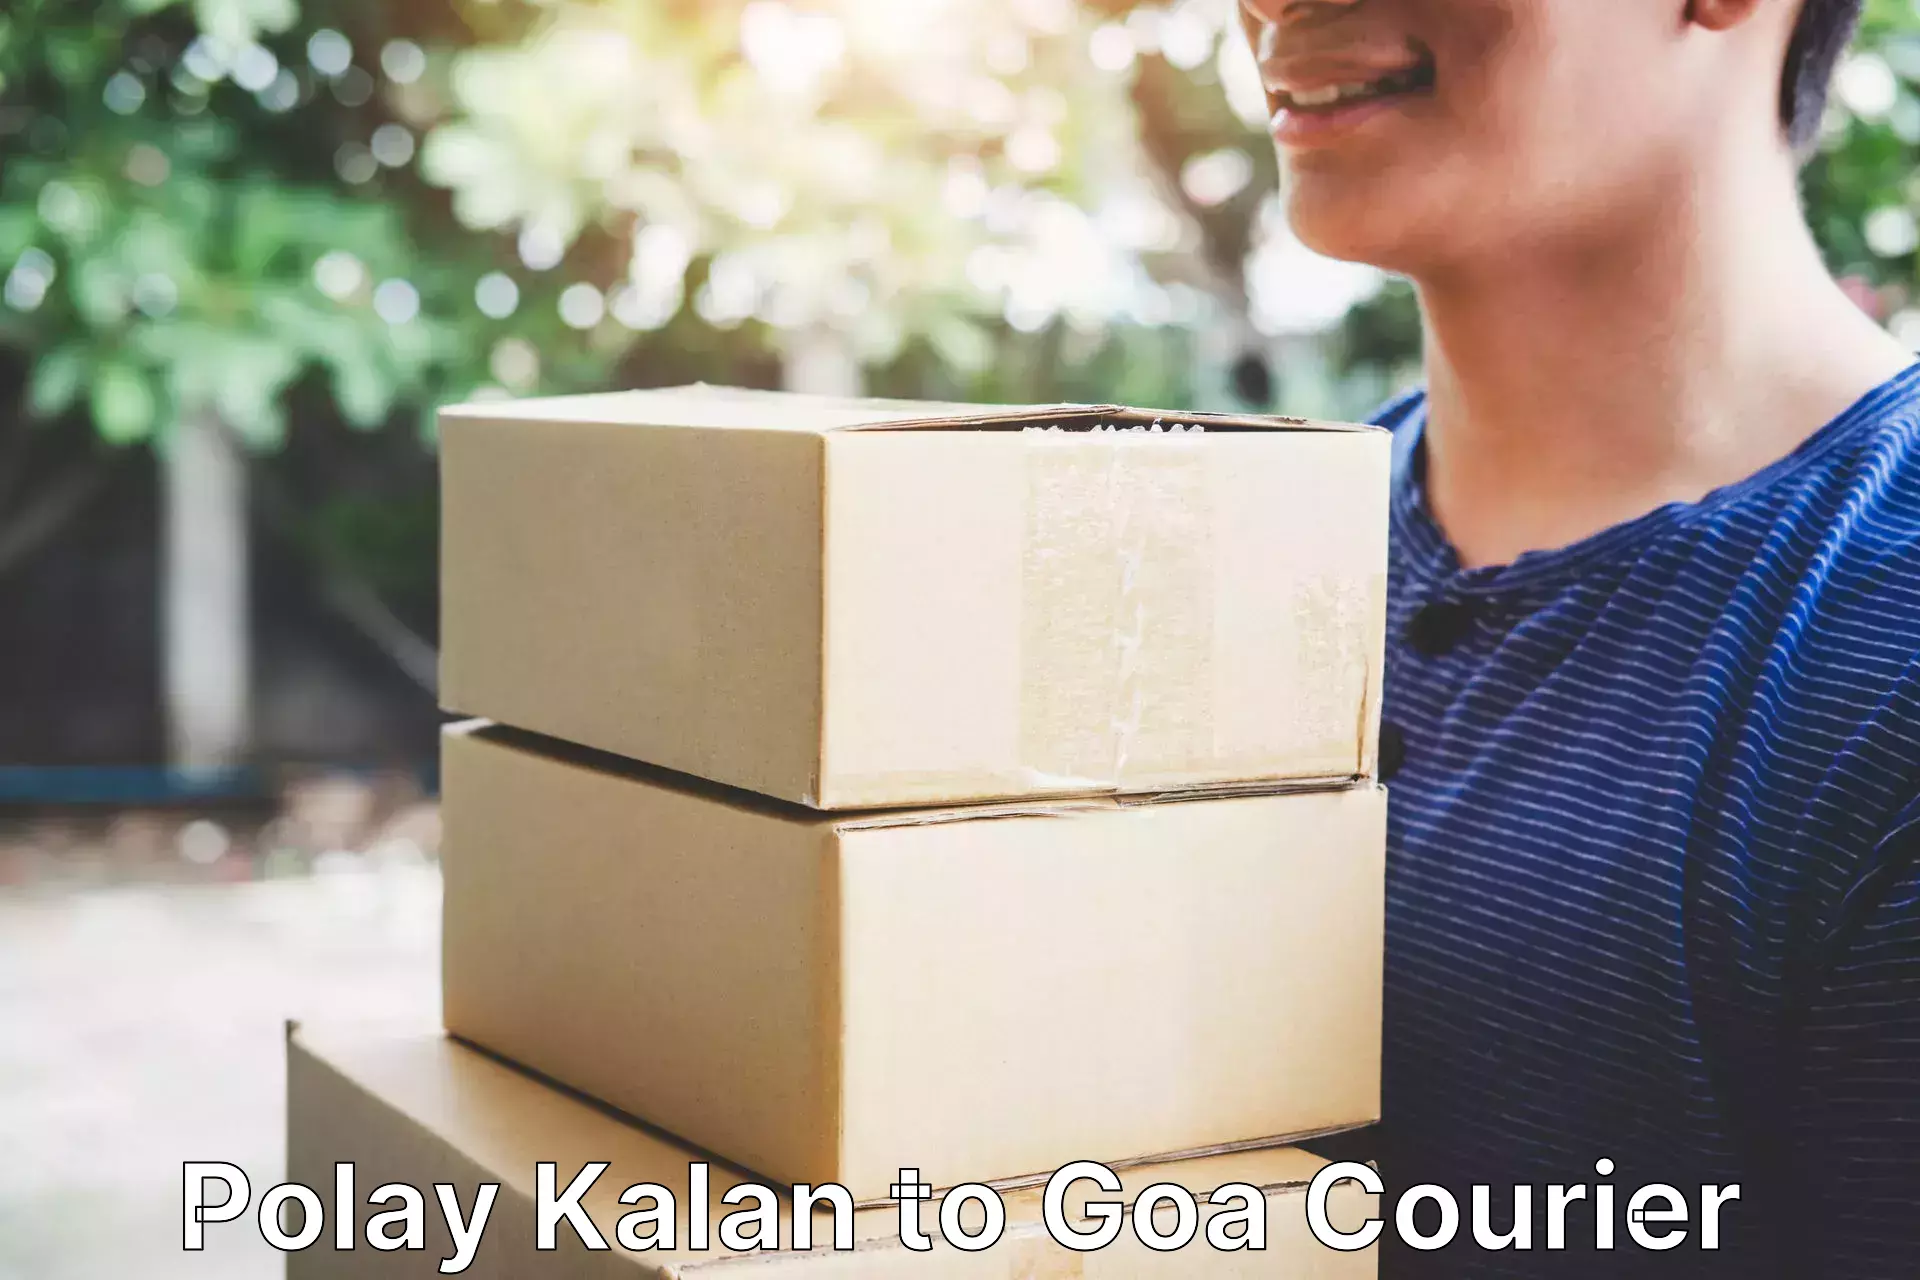 Weekend courier service Polay Kalan to Goa